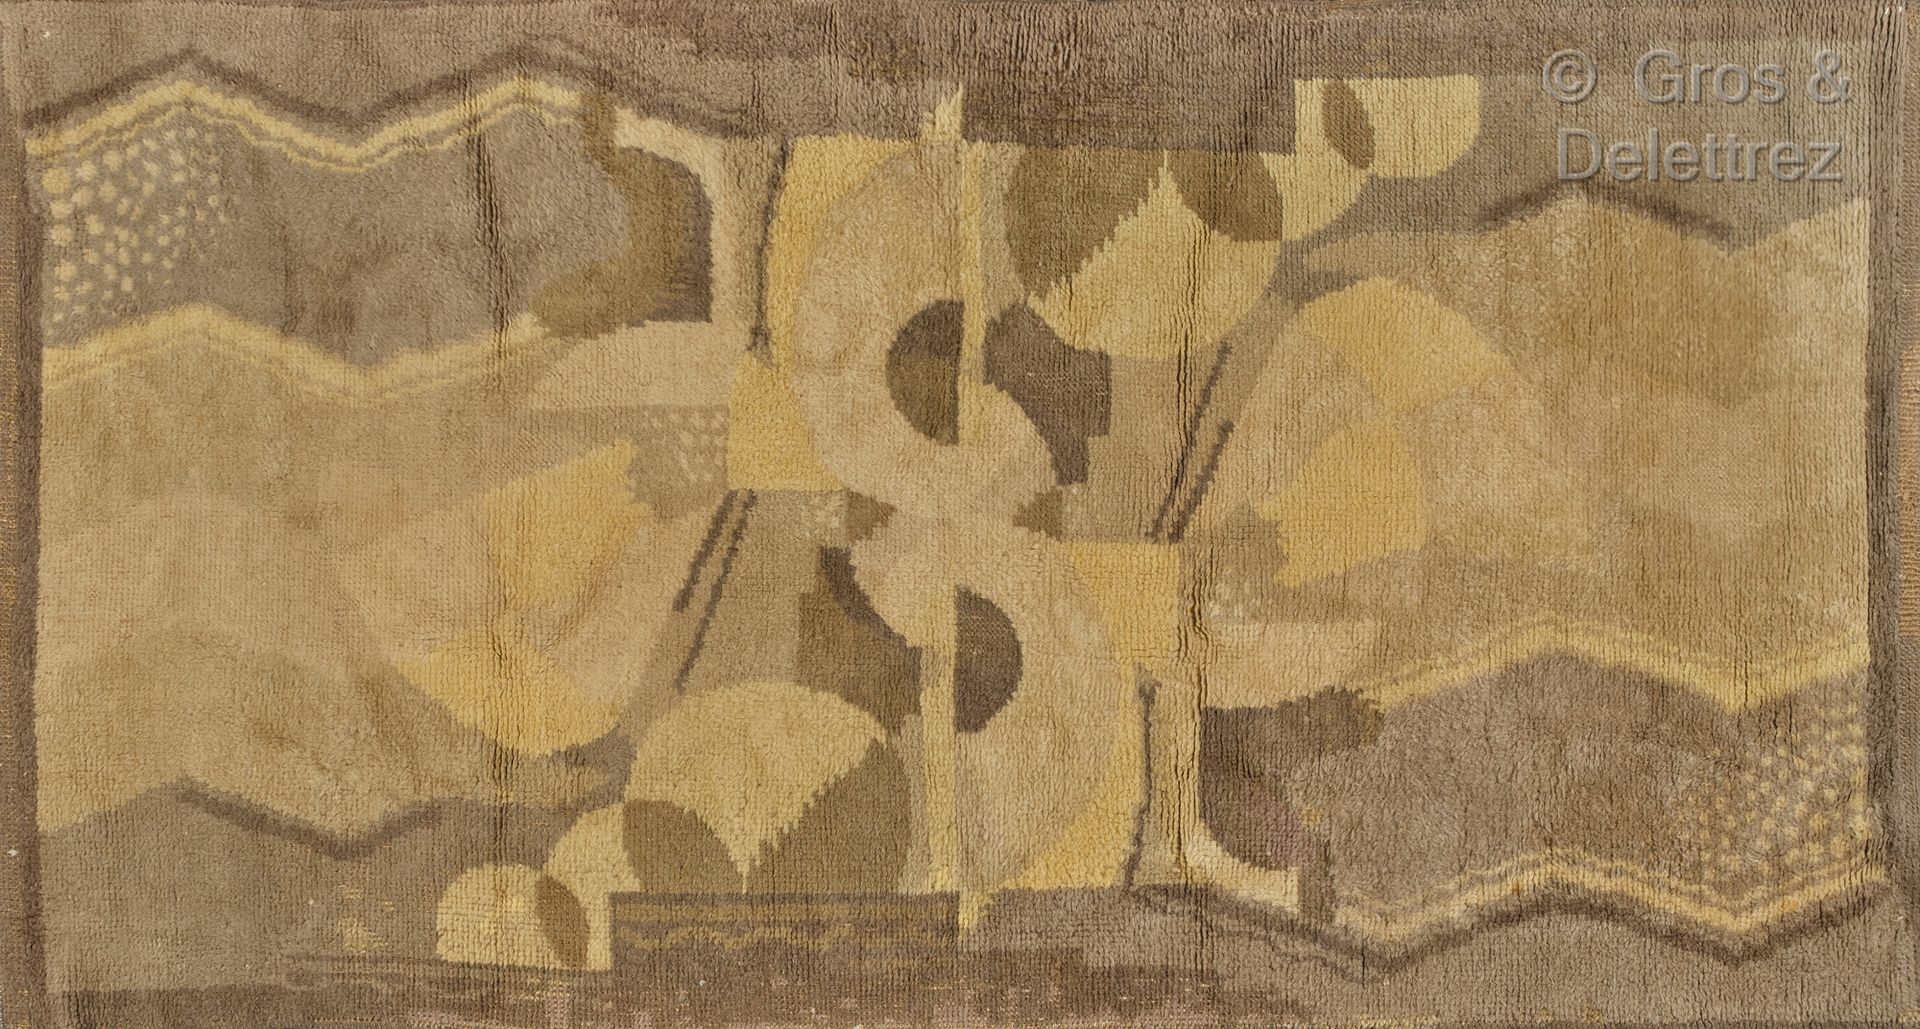 TRAVAIL DES ANNÉES 30 Alfombra de lana con decoración geométrica.

235 x 125 cm